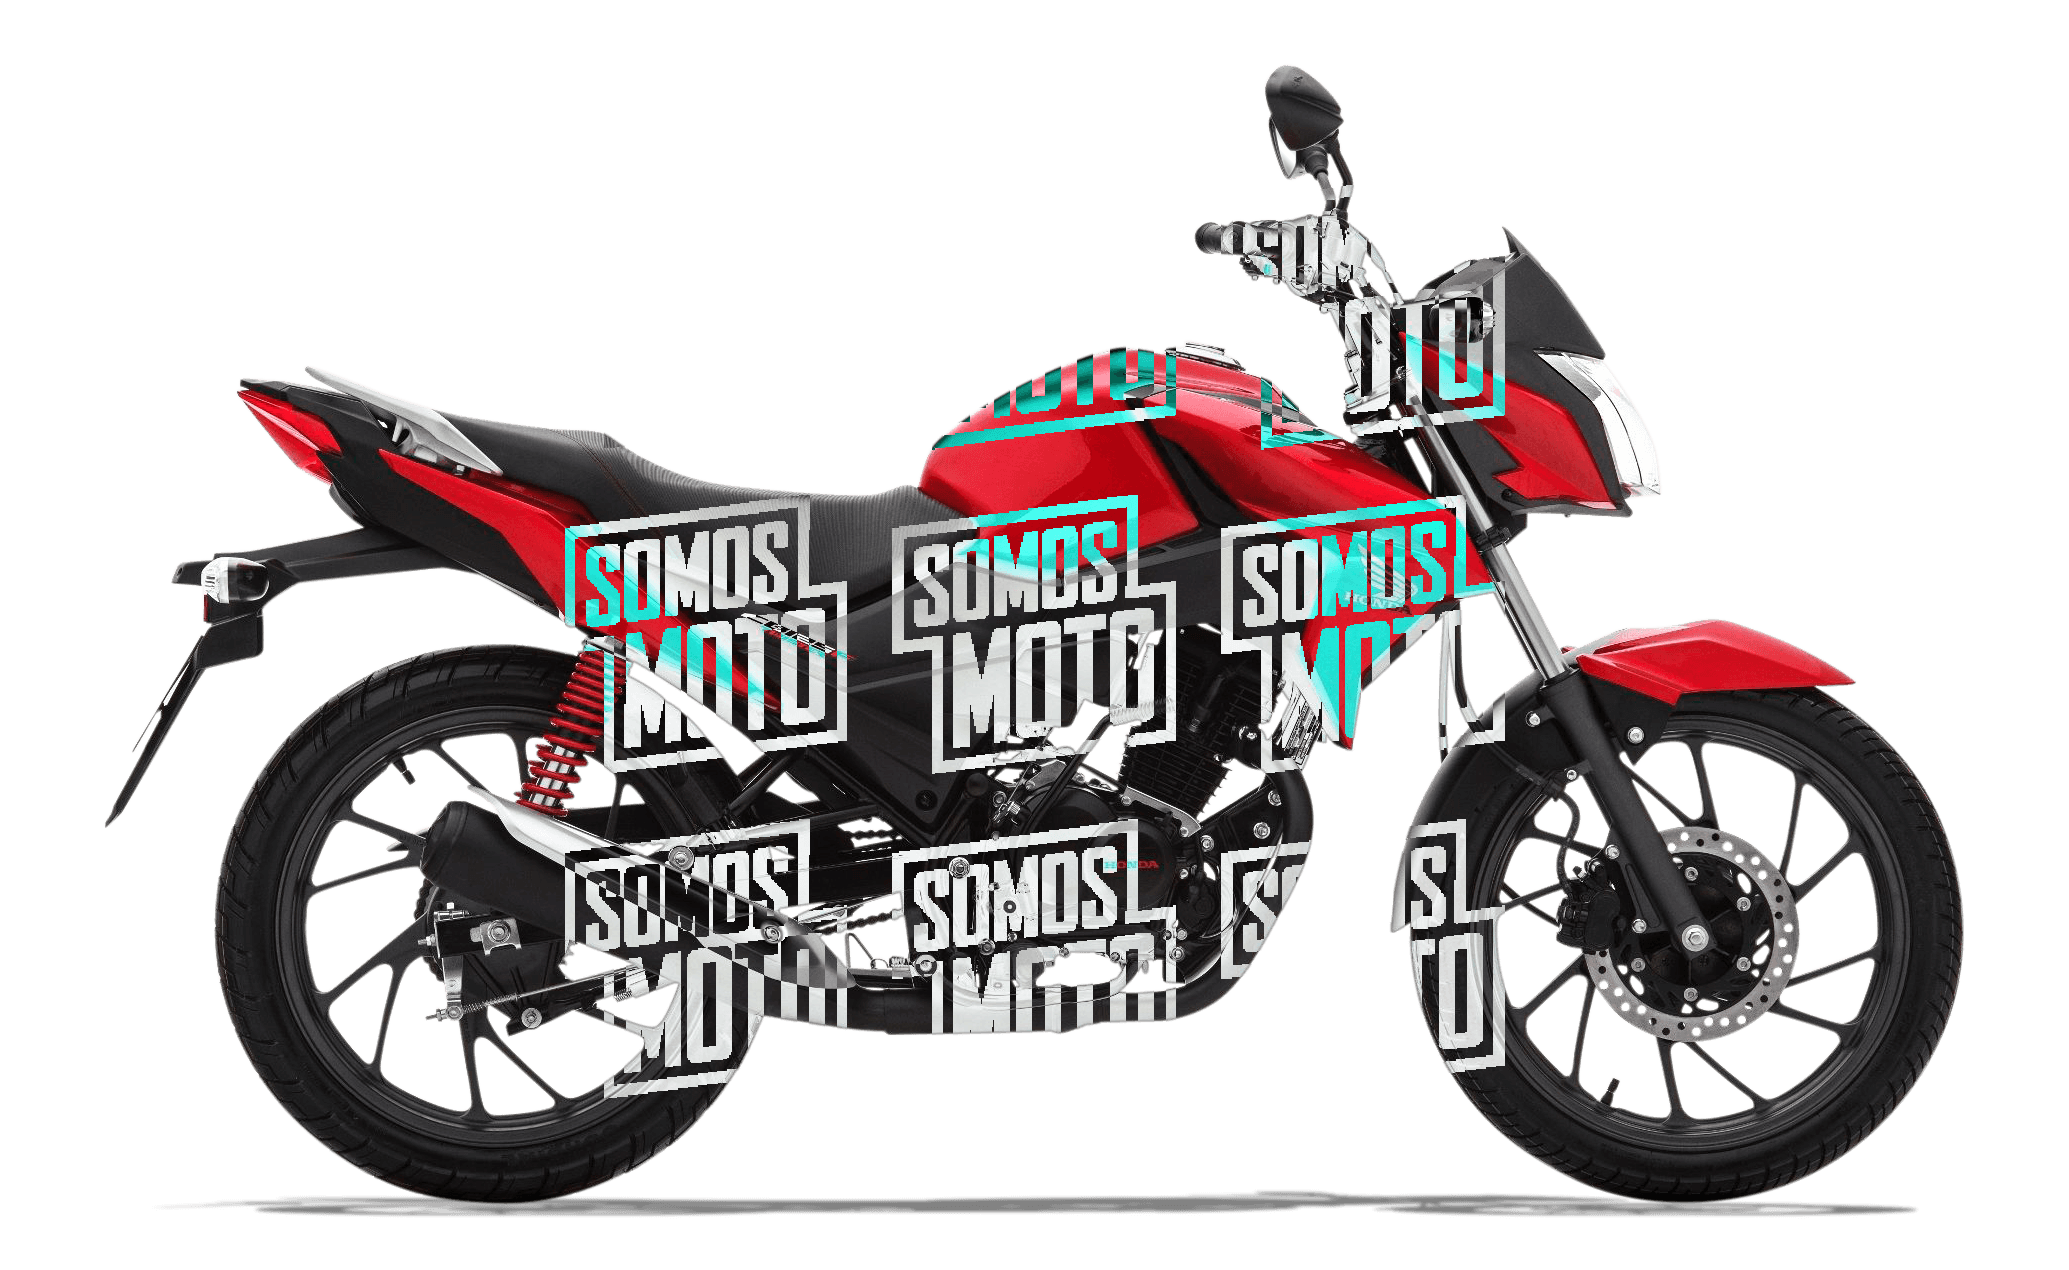 Honda Cb125f Twister 2020 Precio 1599 Motos Honda Somos Moto Perú 5392